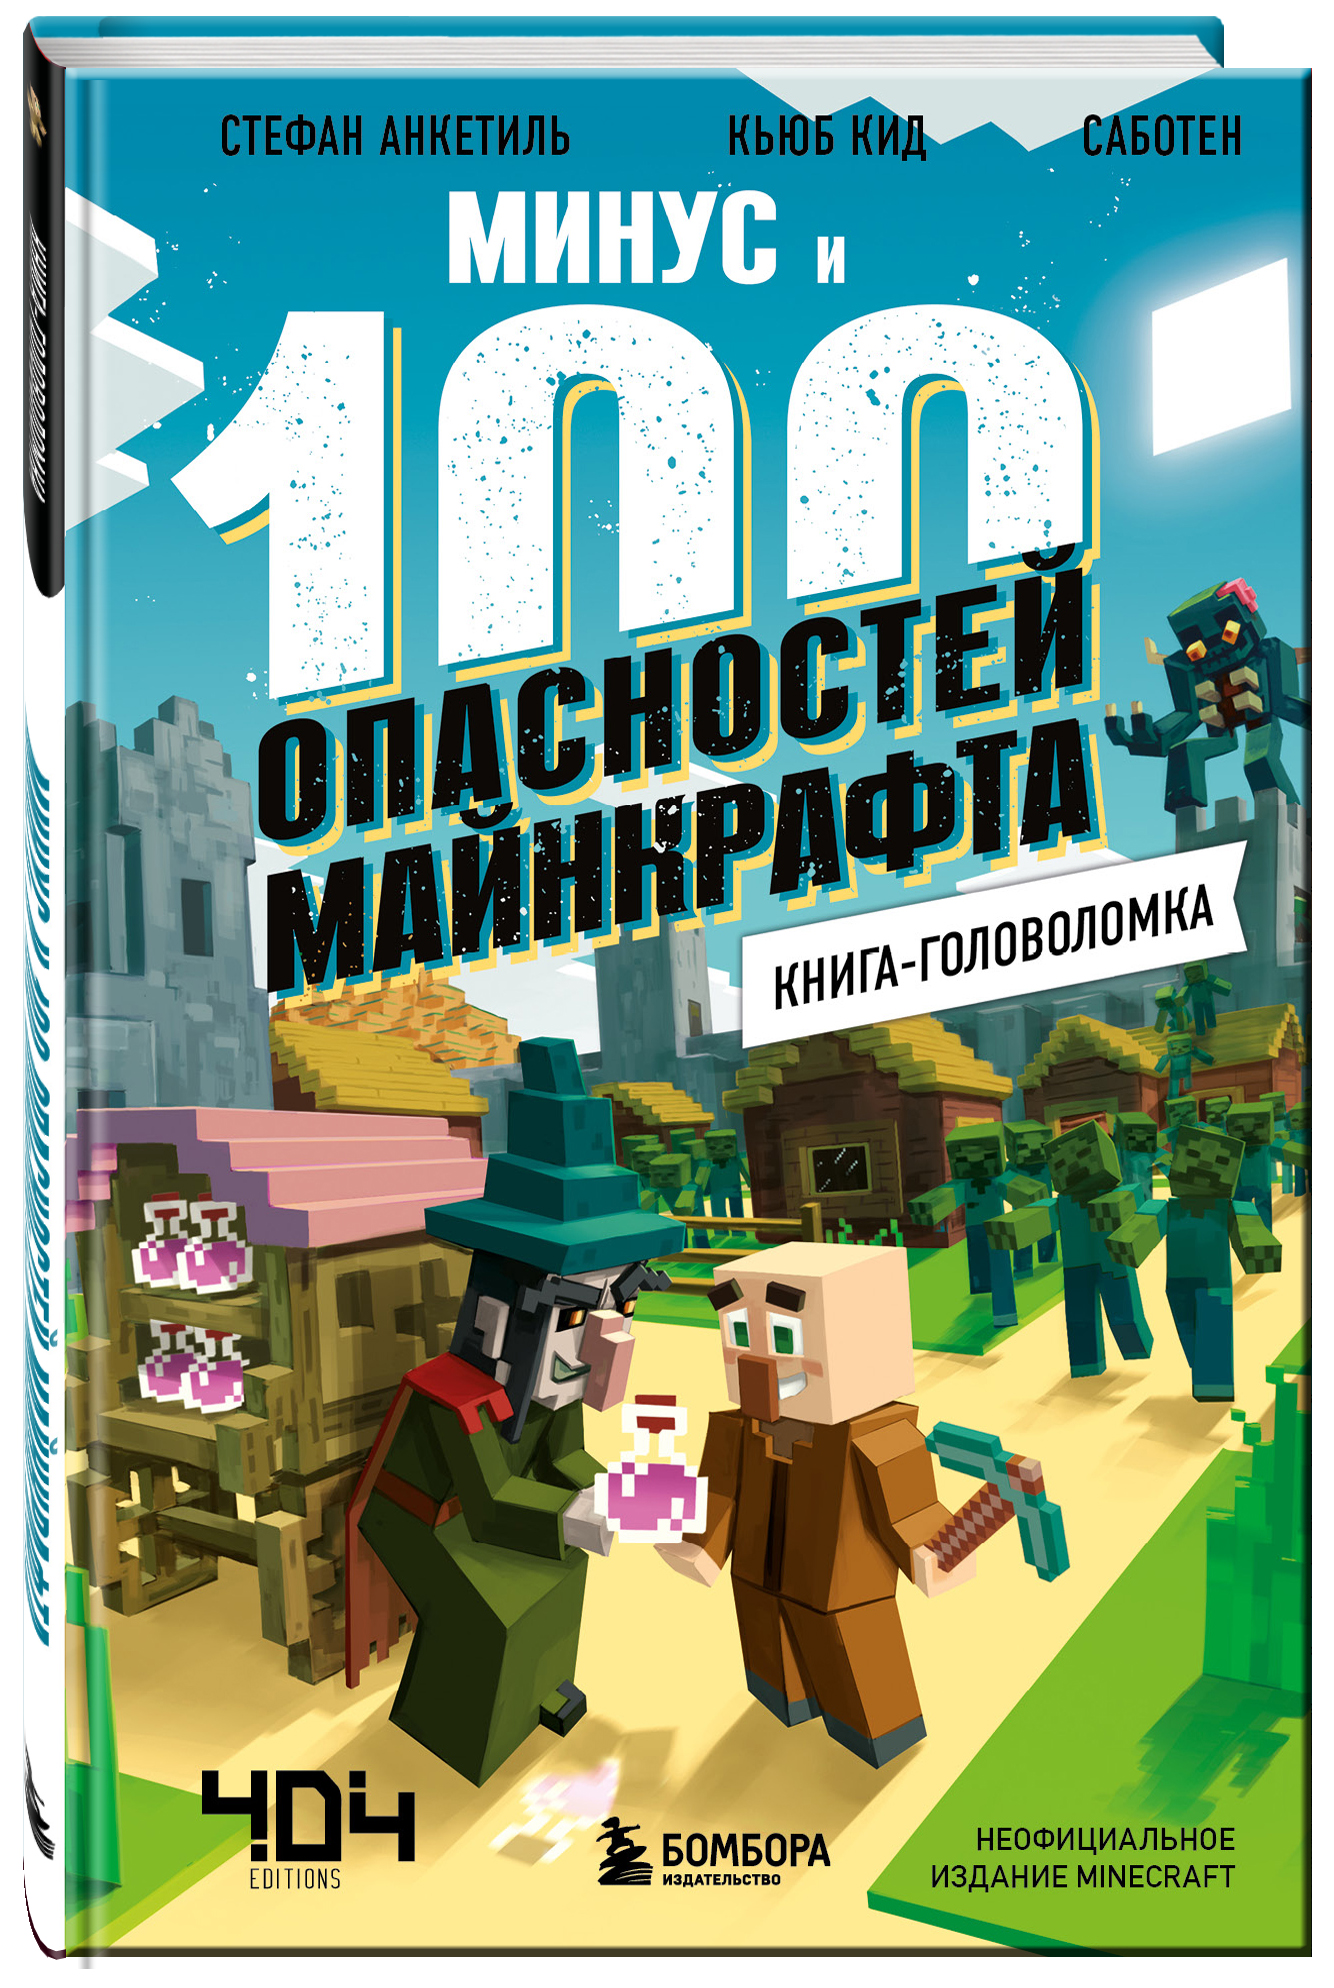 Книга-головоломка: Минус и 100 опасностей Майнкрафта от 1С Интерес